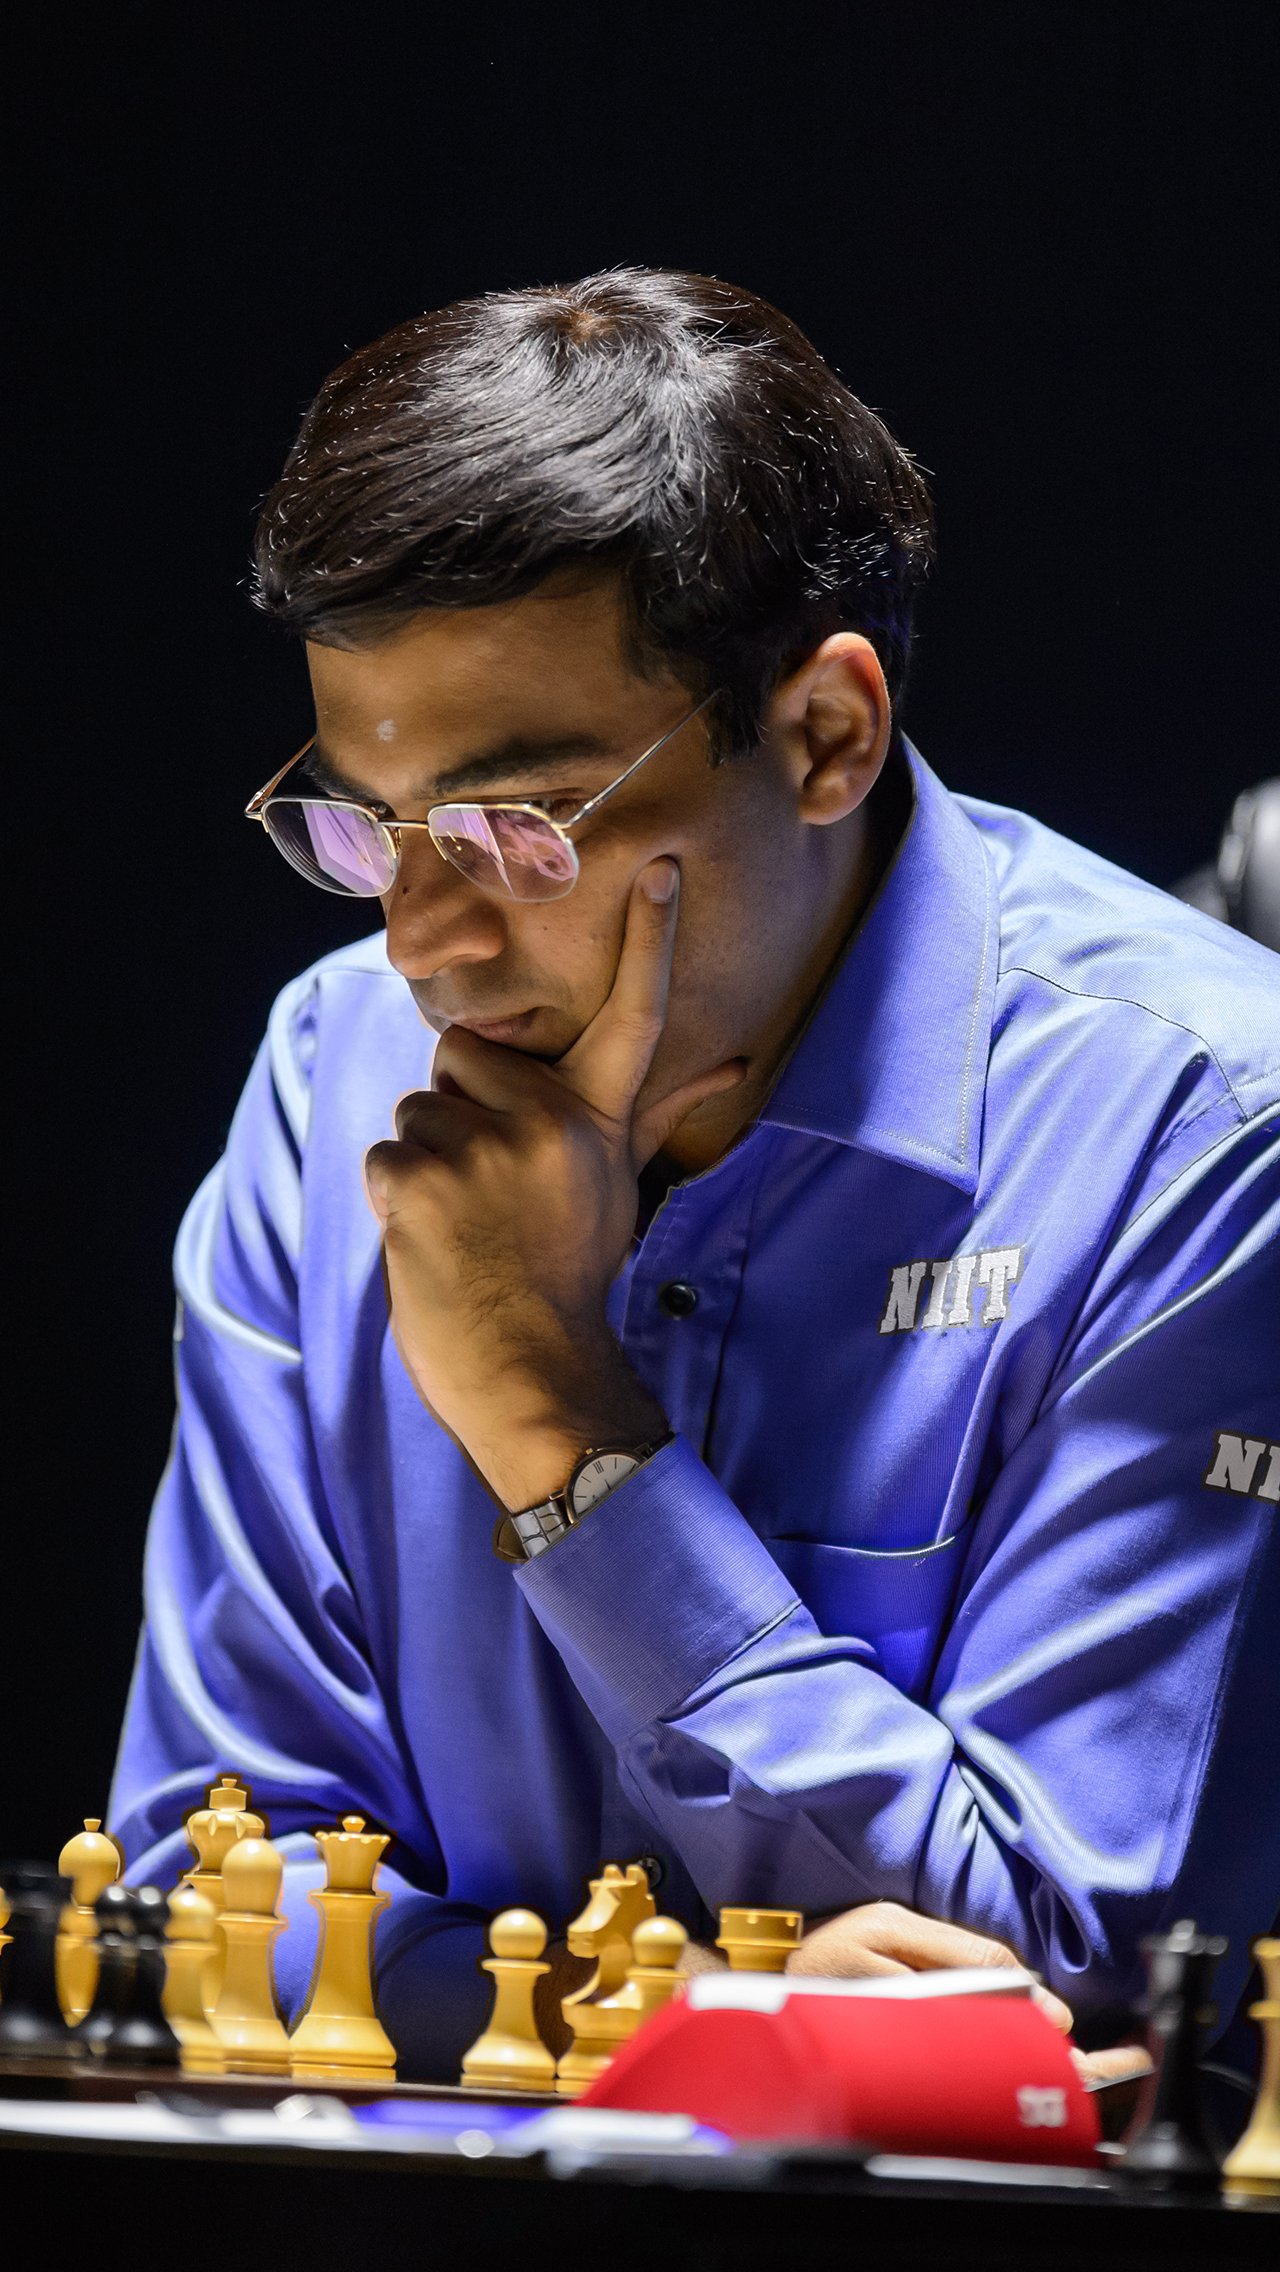 В 2007 году Крамника обыграл индийский гроссмейстер Вишванатан Ананд. С тех пор россияне чемпионами мира не были. А сам Ананд продержался на шахматном троне до 2013 года.